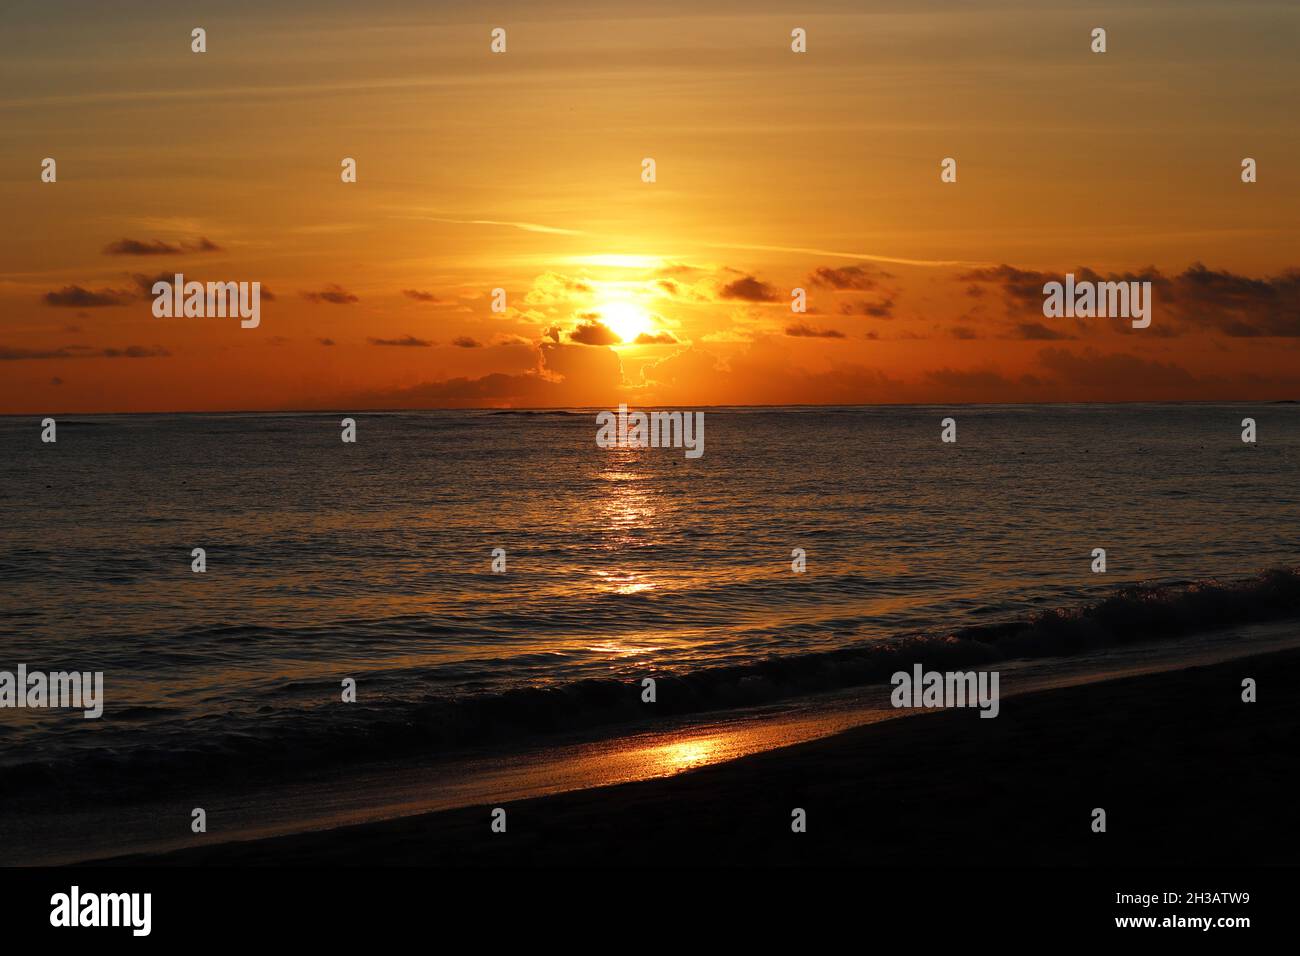 Coucher de soleil sur une plage de sable, soleil orange brille à travers les nuages.Soirée mer, fond pour un voyage romantique Banque D'Images